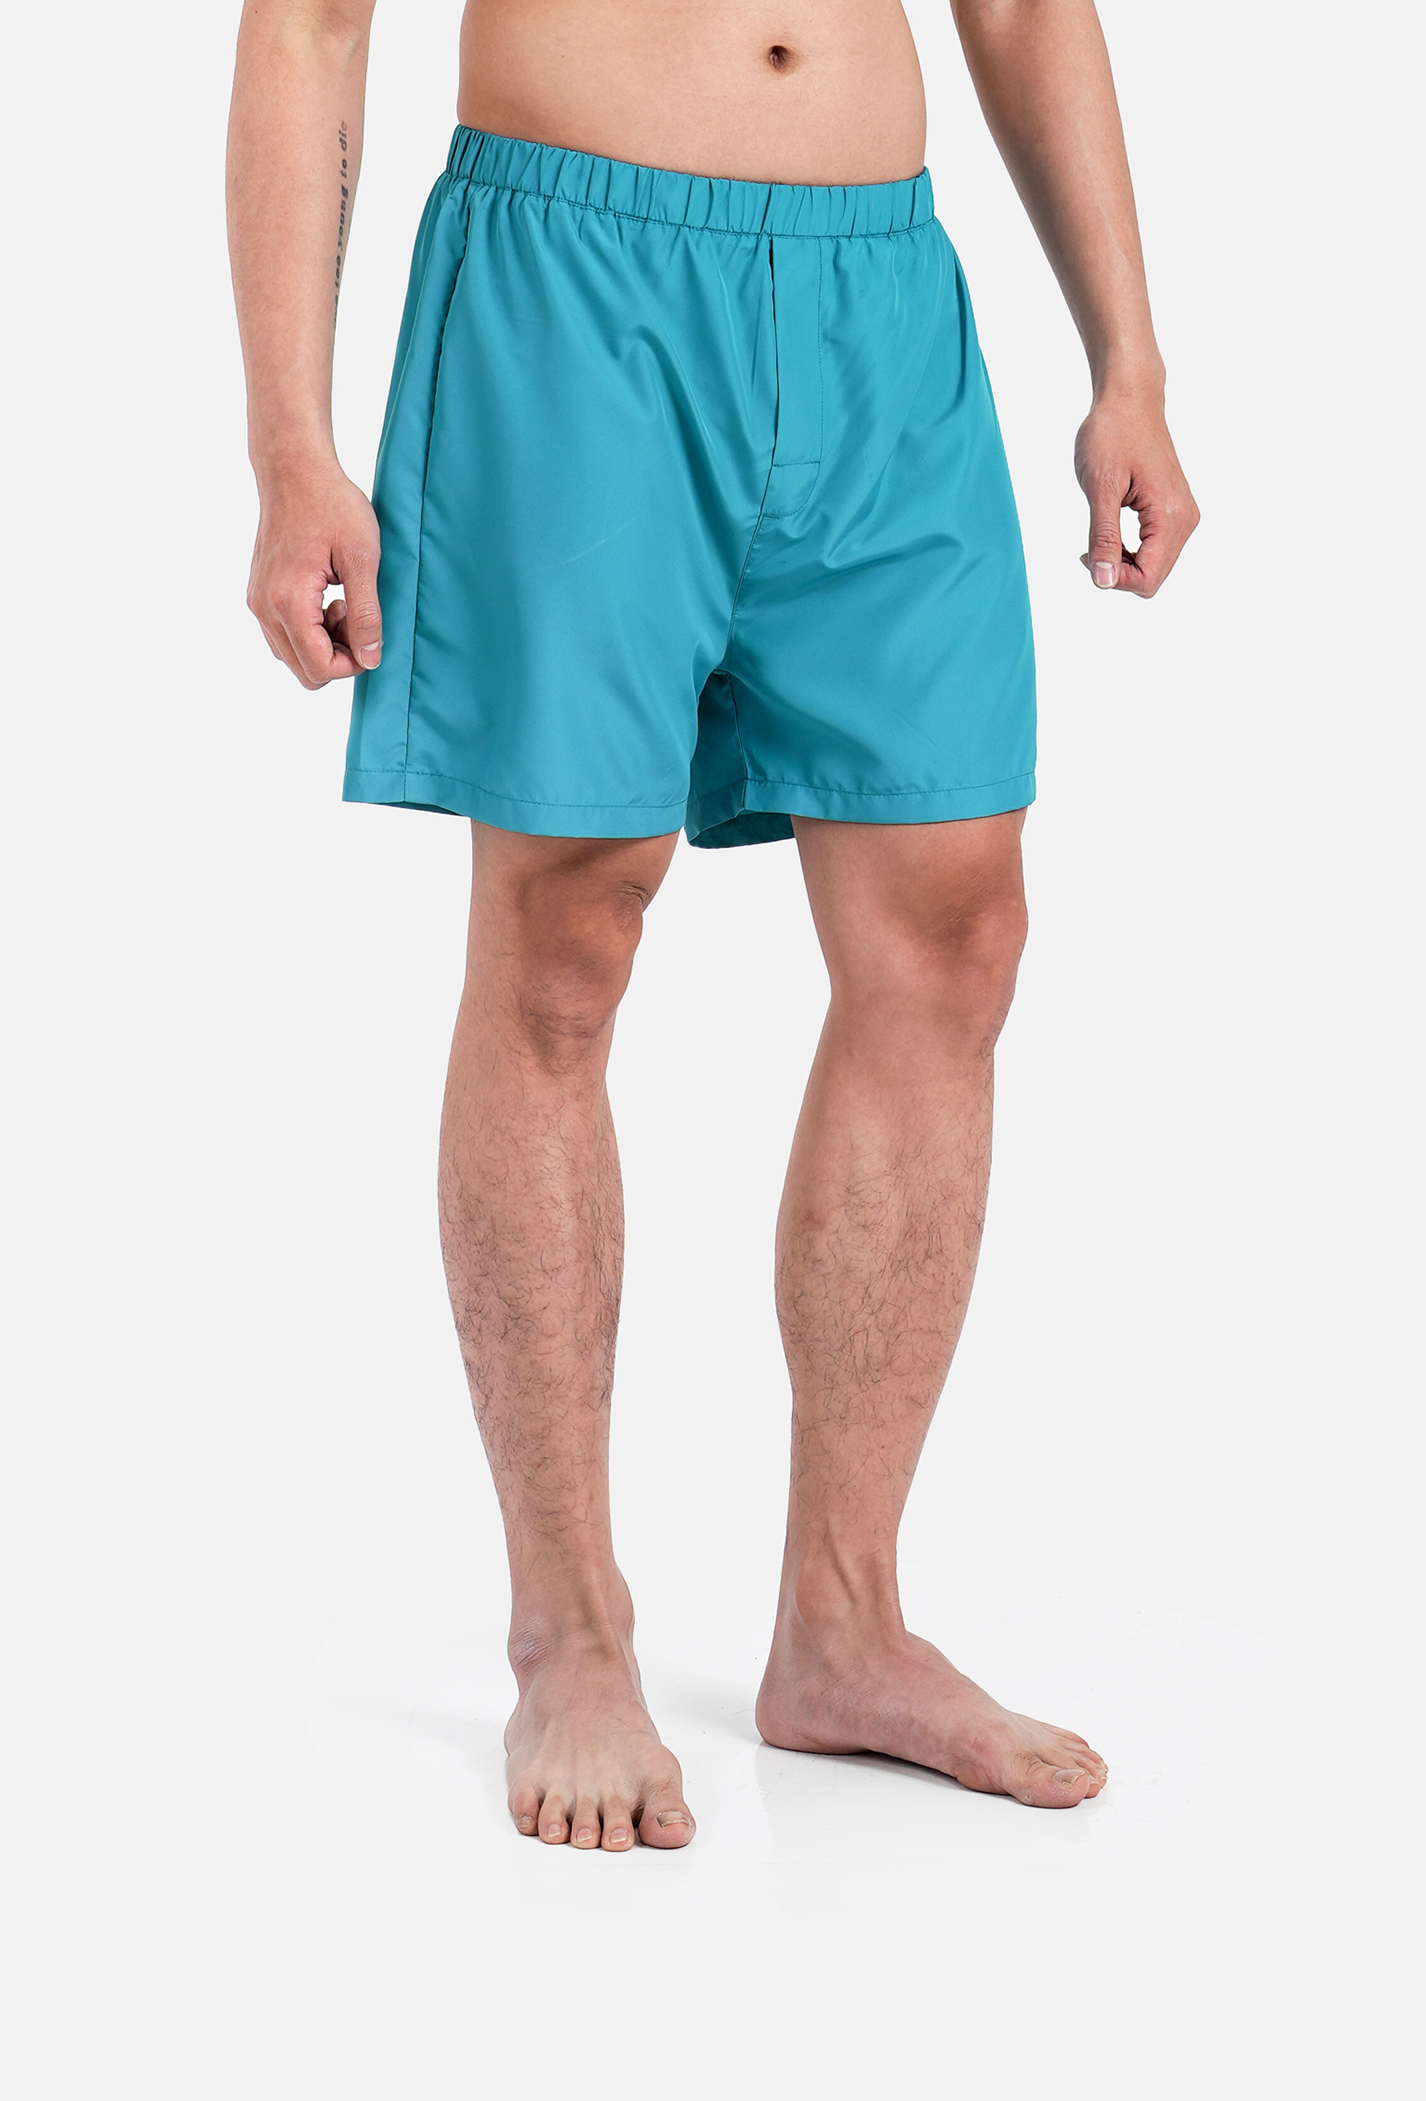 FLASH SALE - Quần Shorts mặc nhà Coolmate Basics  Xanh ngọc 1